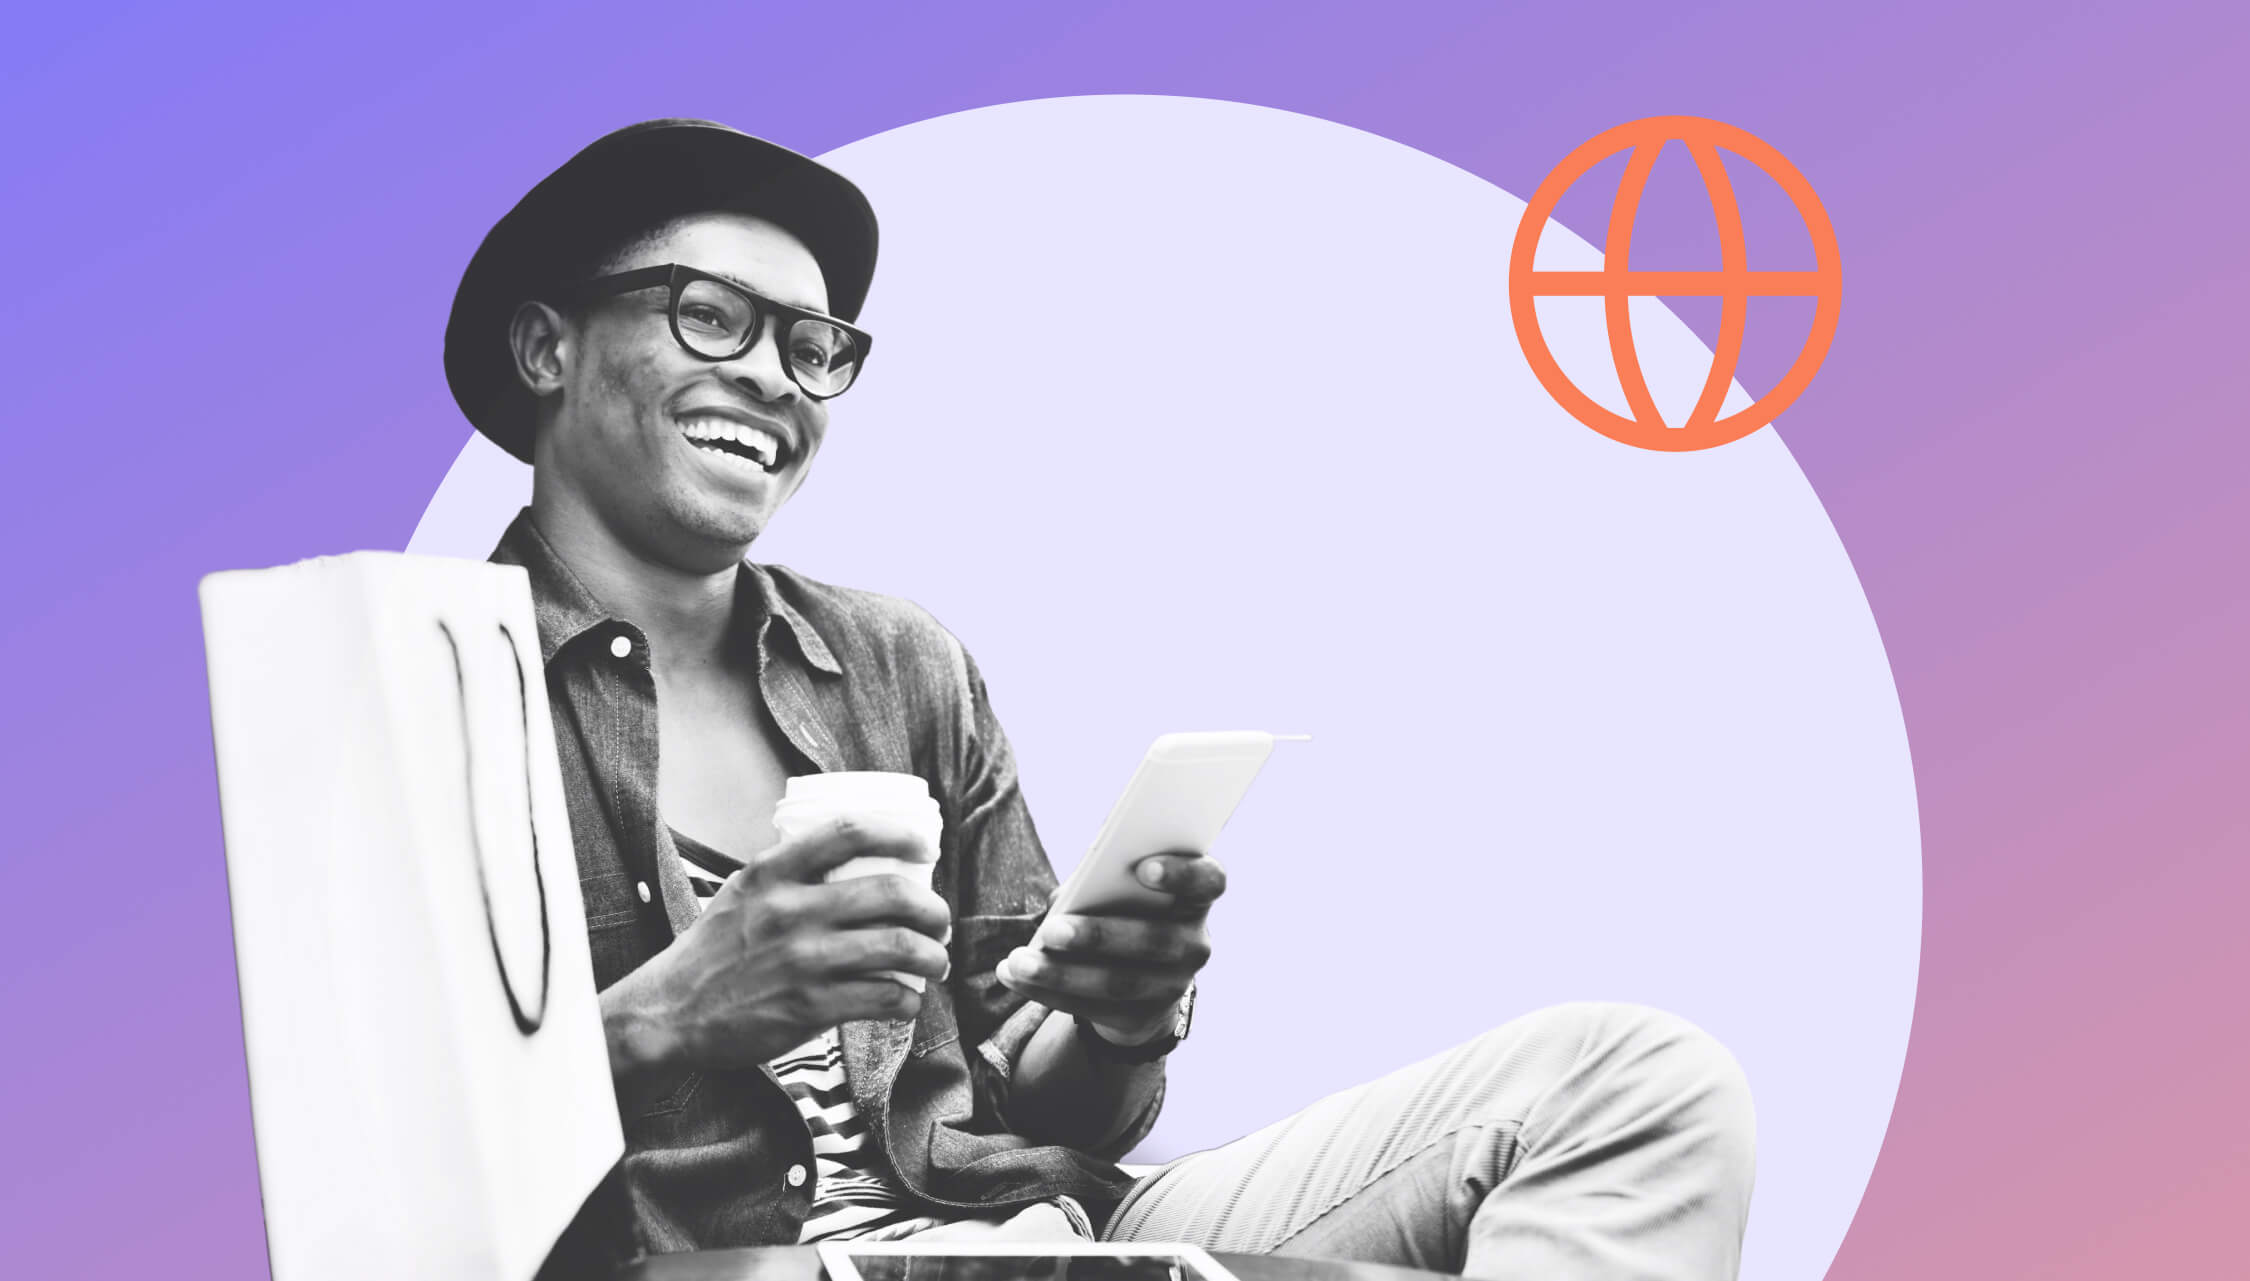 Mann mit Hut und Brille sitzt mit Smartphone und Kaffee in der Hand und lacht, neben ihm ist eine Einkaufstüte, dahinter lila Hintergrund.